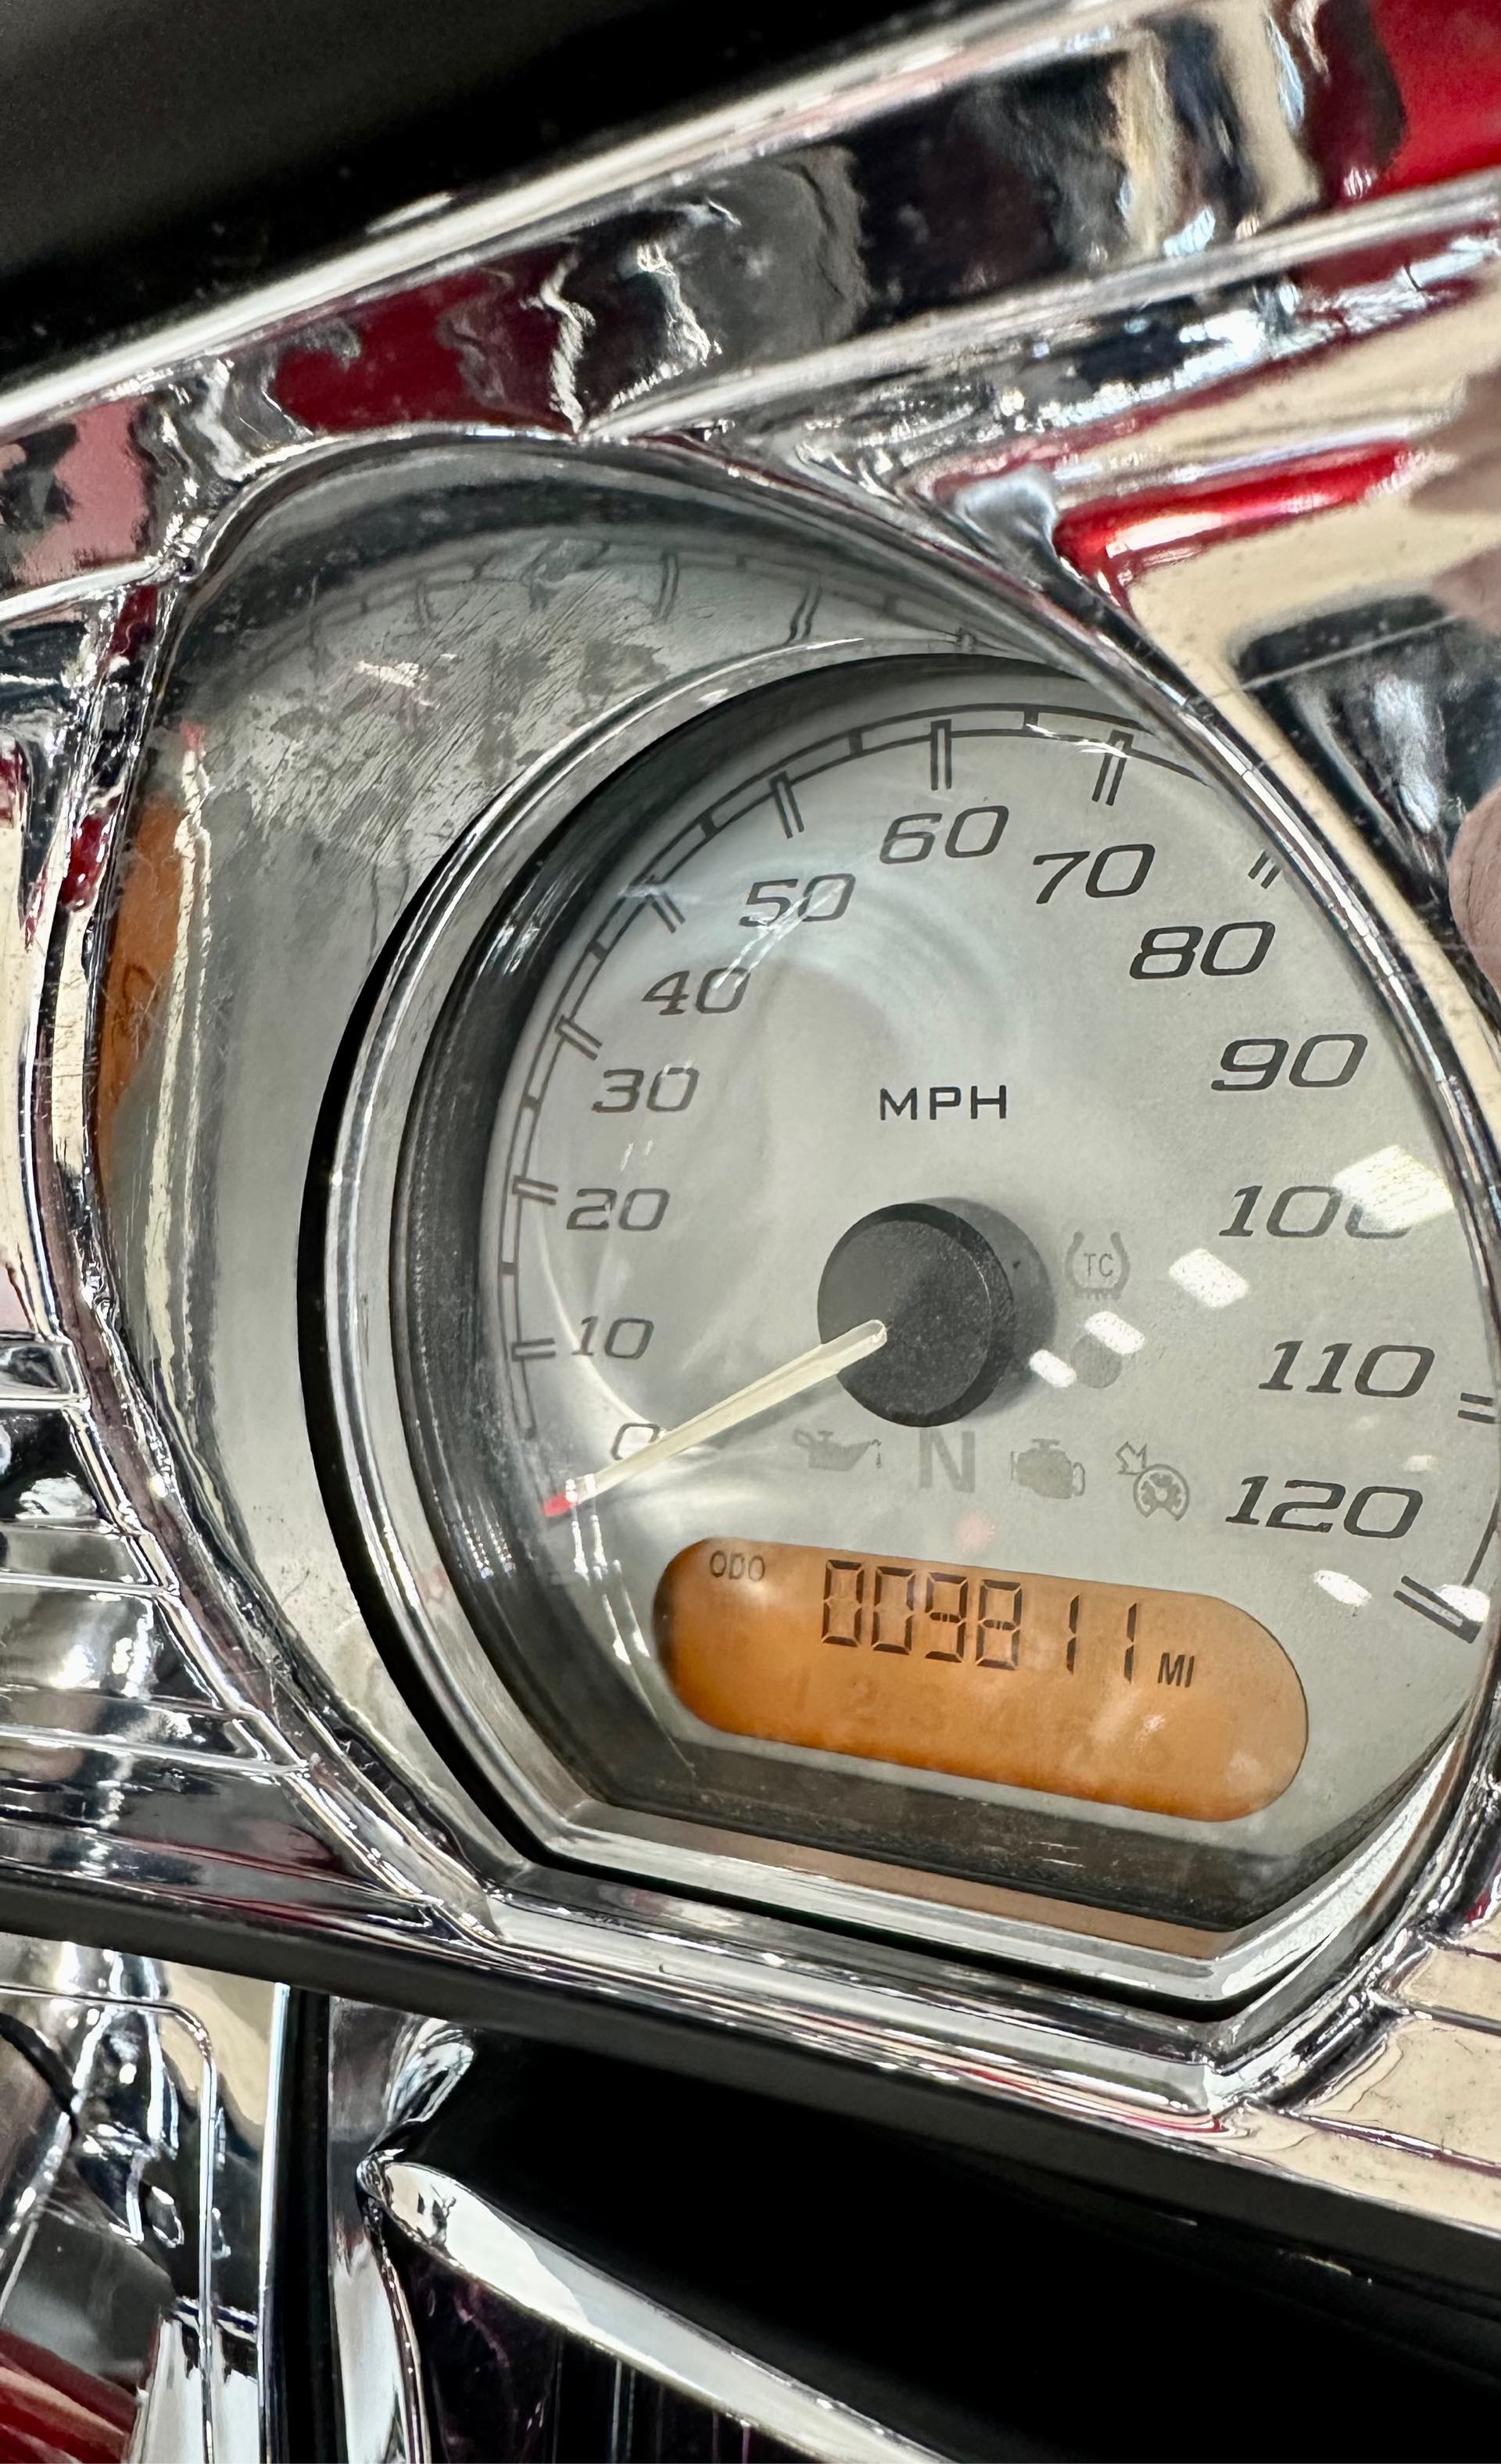 2019 Harley-Davidson Street Glide Base at Destination Harley-Davidson®, Tacoma, WA 98424